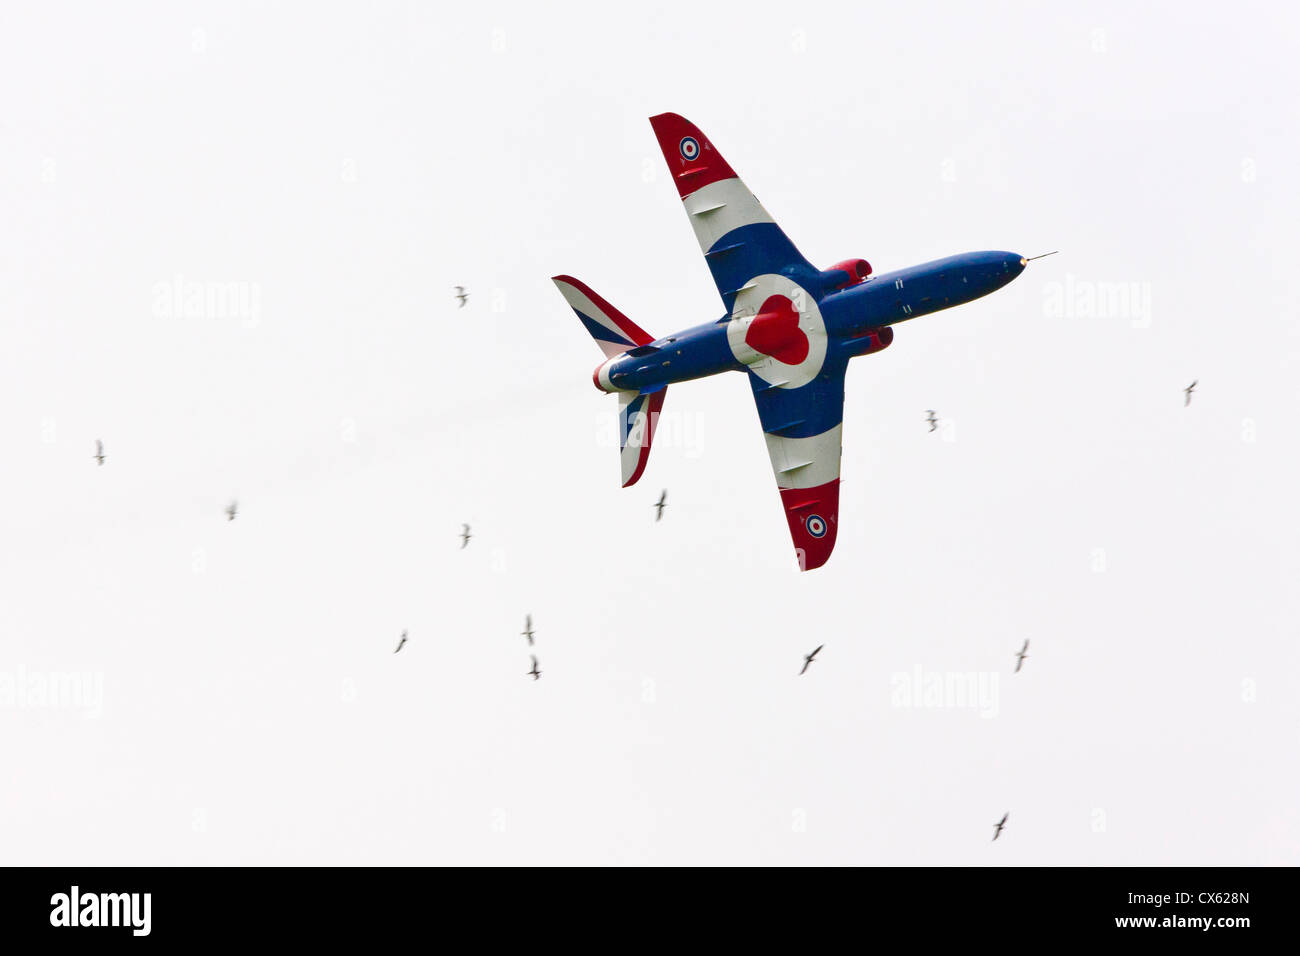 Des flèches rouges avions Hawk dans la Caisse de bienfaisance de la RAF au mieux les couleurs de la présentation, Cotswold (Kemble EGBP) de l'aéroport. JMH6092 Banque D'Images